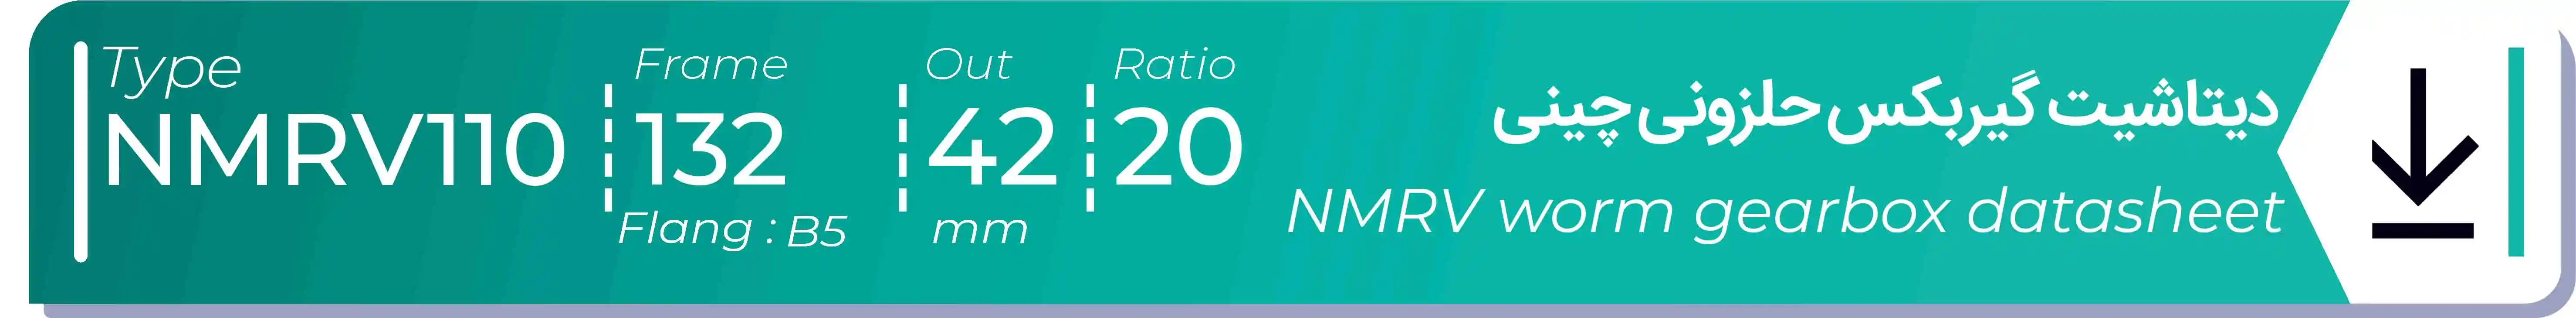  دیتاشیت و مشخصات فنی گیربکس حلزونی چینی   NMRV110  -  با خروجی 42- میلی متر و نسبت20 و فریم 132